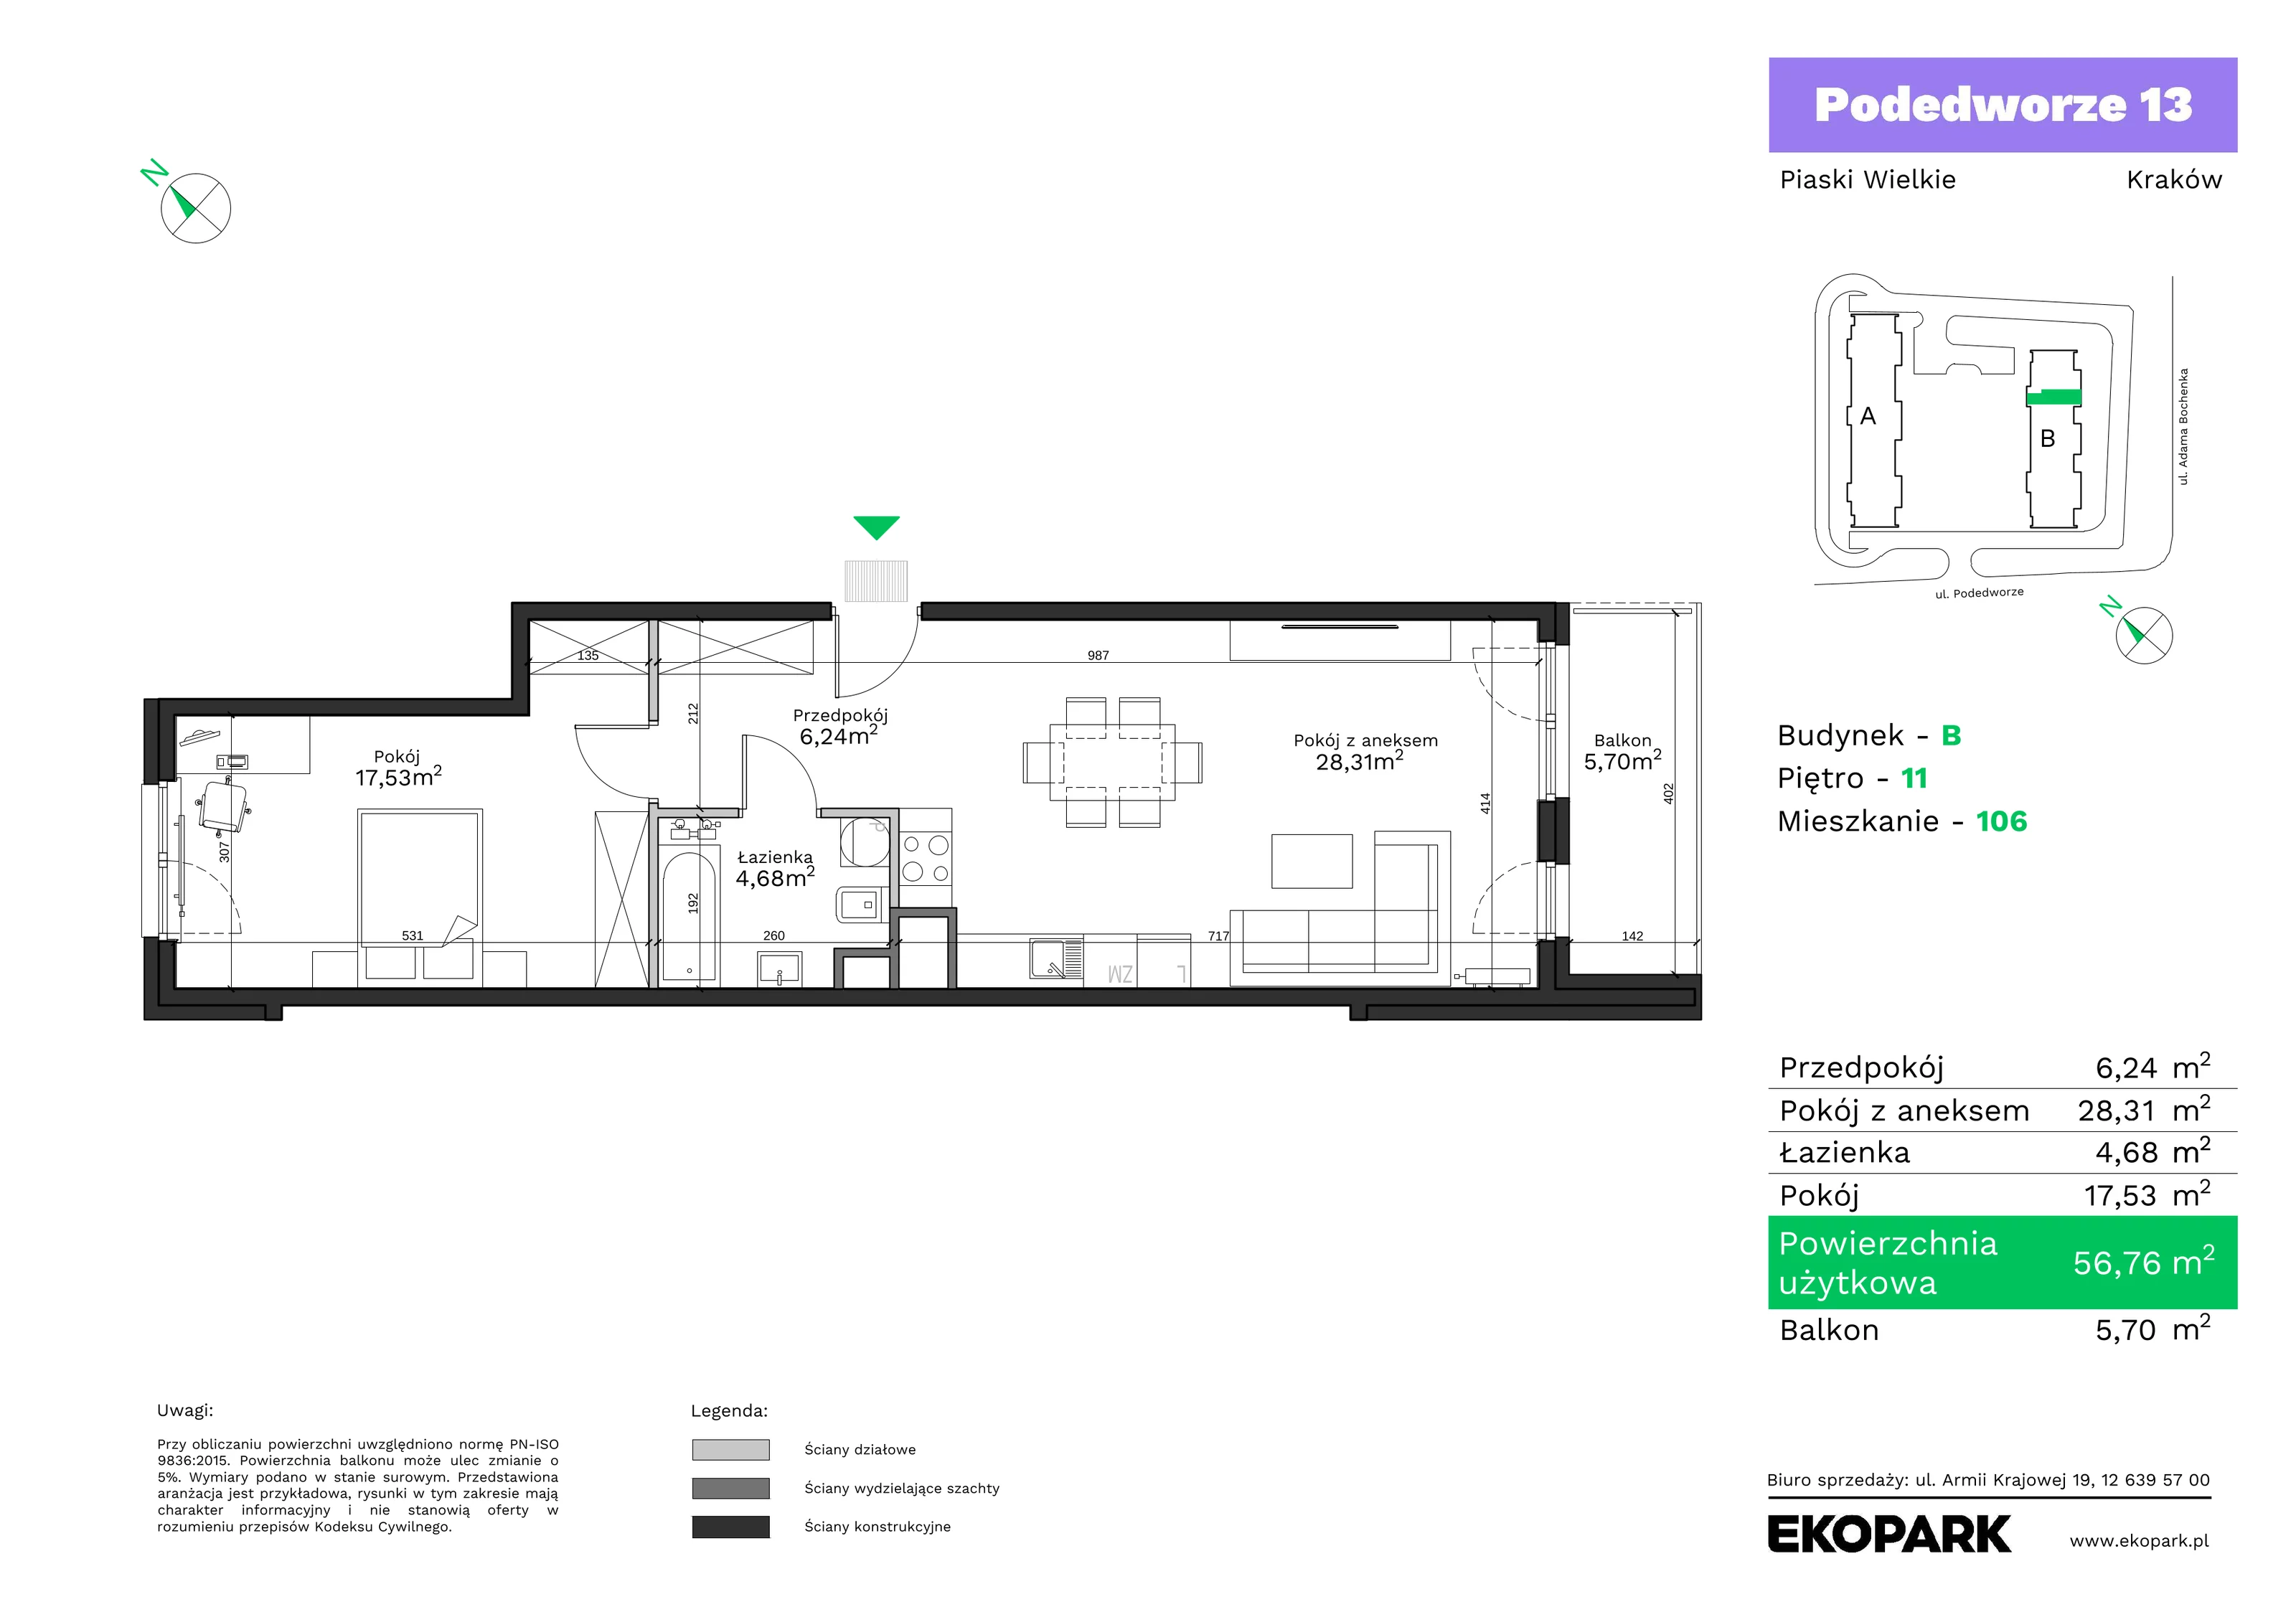 Mieszkanie 56,76 m², piętro 11, oferta nr B106, Podedworze 13, Kraków, Podgórze Duchackie, Piaski Wielkie, ul. Podedworze 13